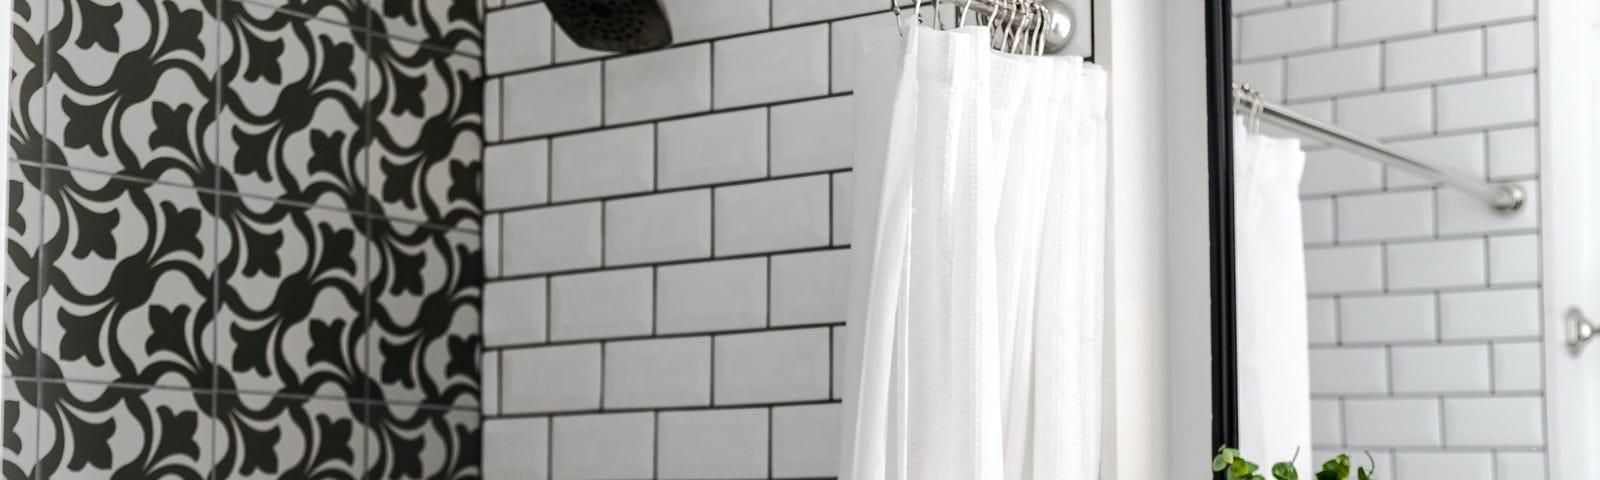 black & white tiled shower, white shower curtain open